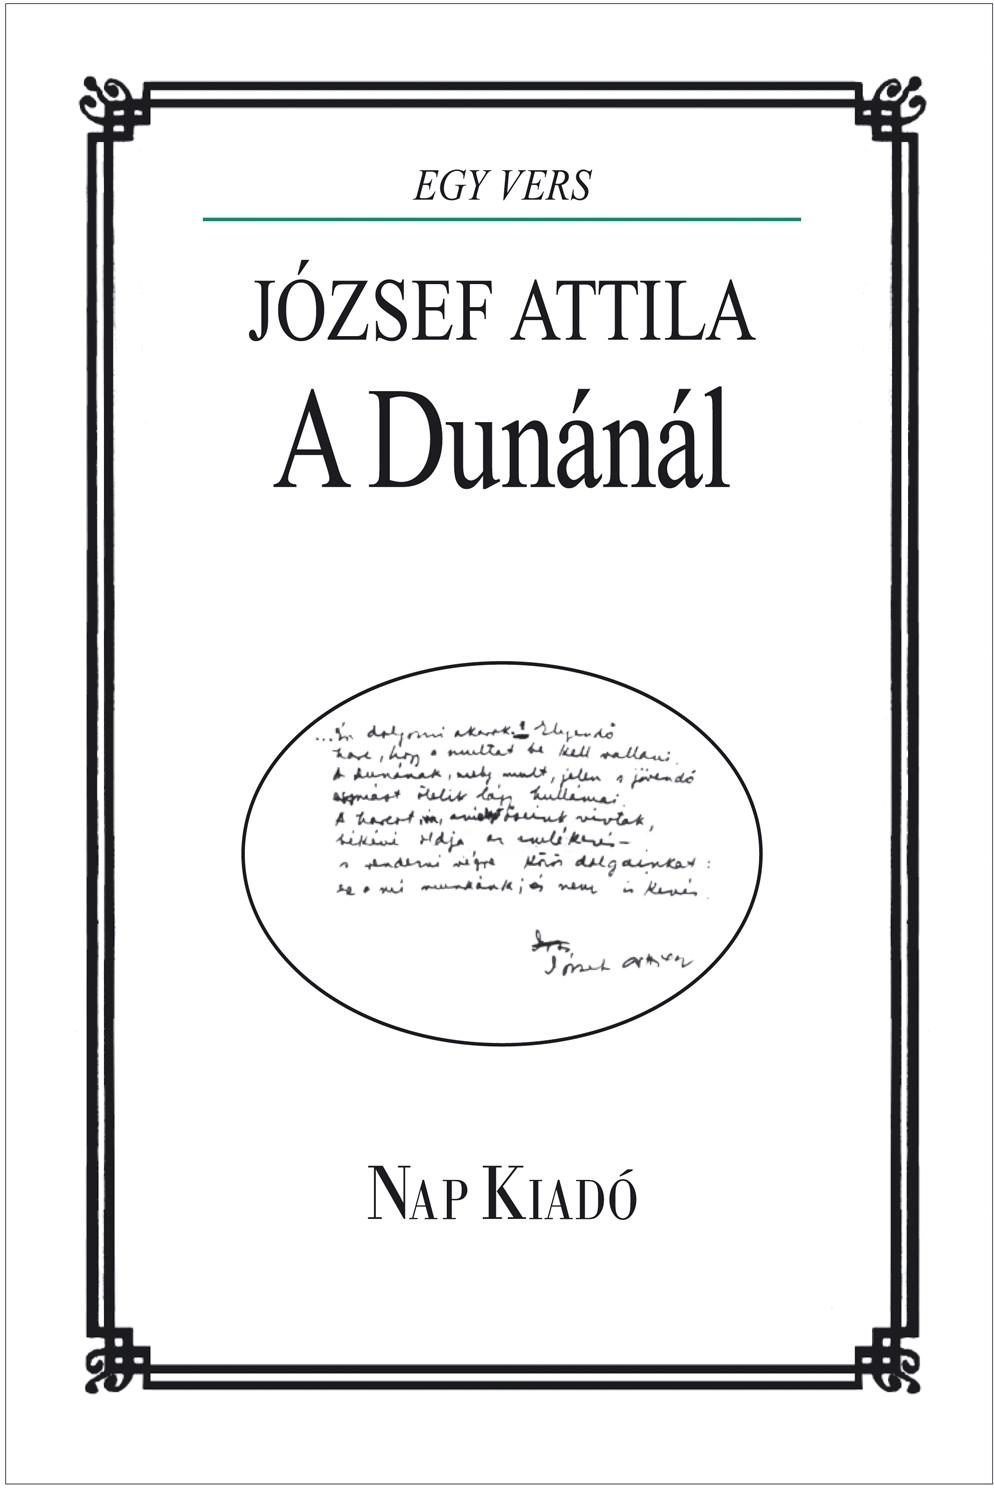 - - A Dunnl - Jzsef Attila